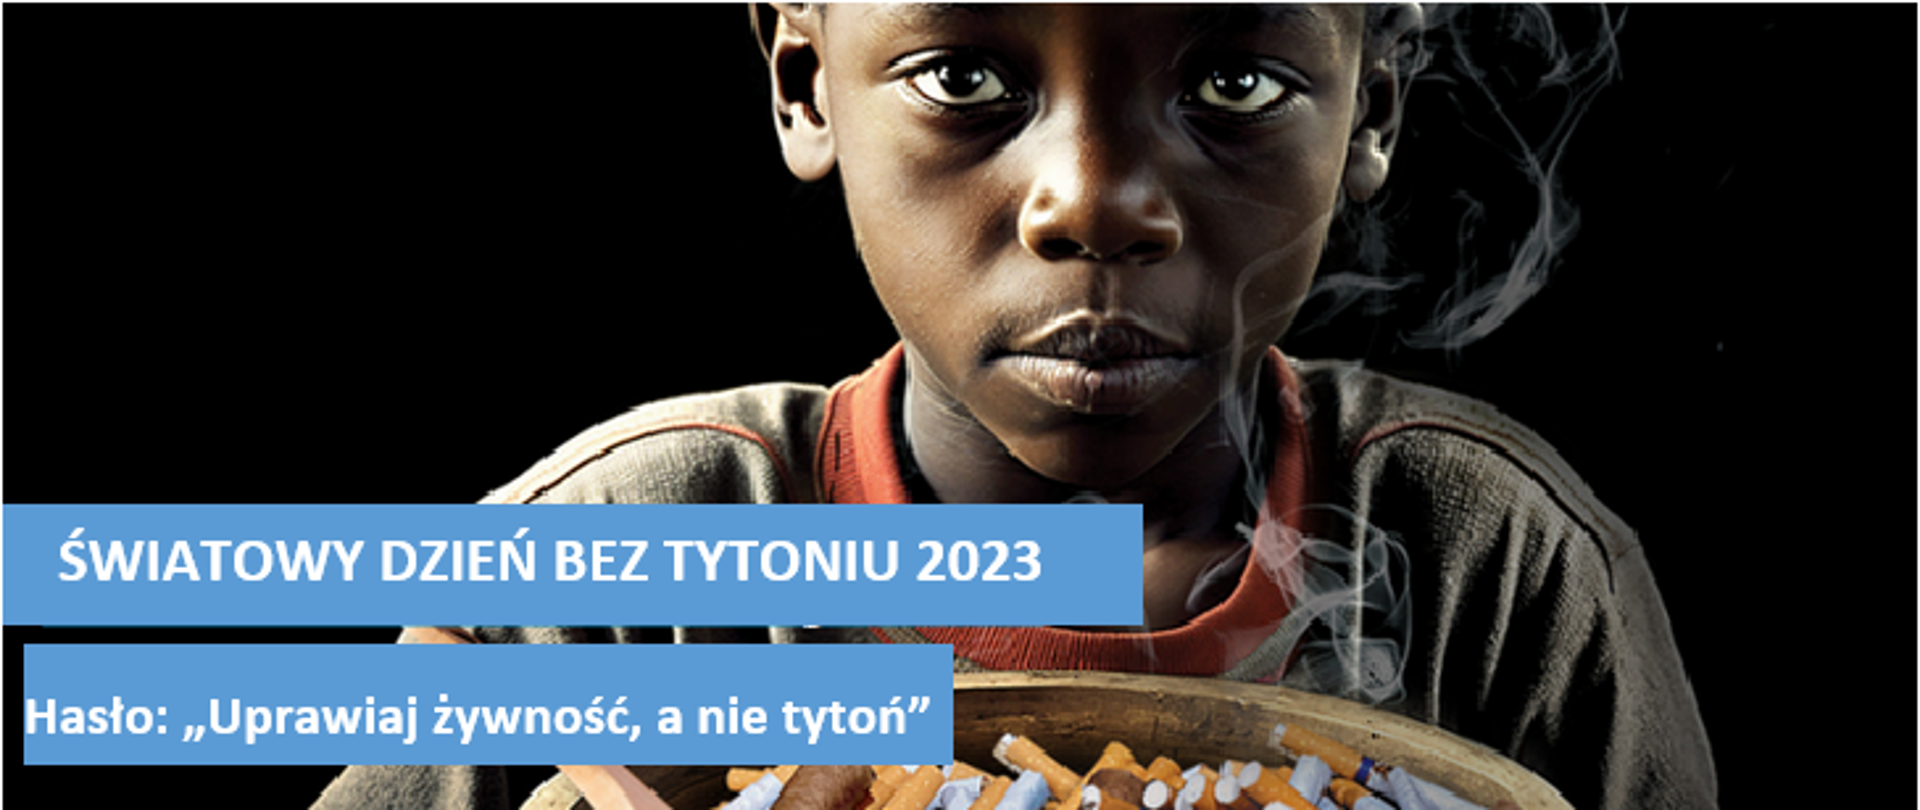 31 maja 2023 Światowy Dzień bez Tytoniu pod hasłem: „Potrzebujemy żywności, nie tytoniu